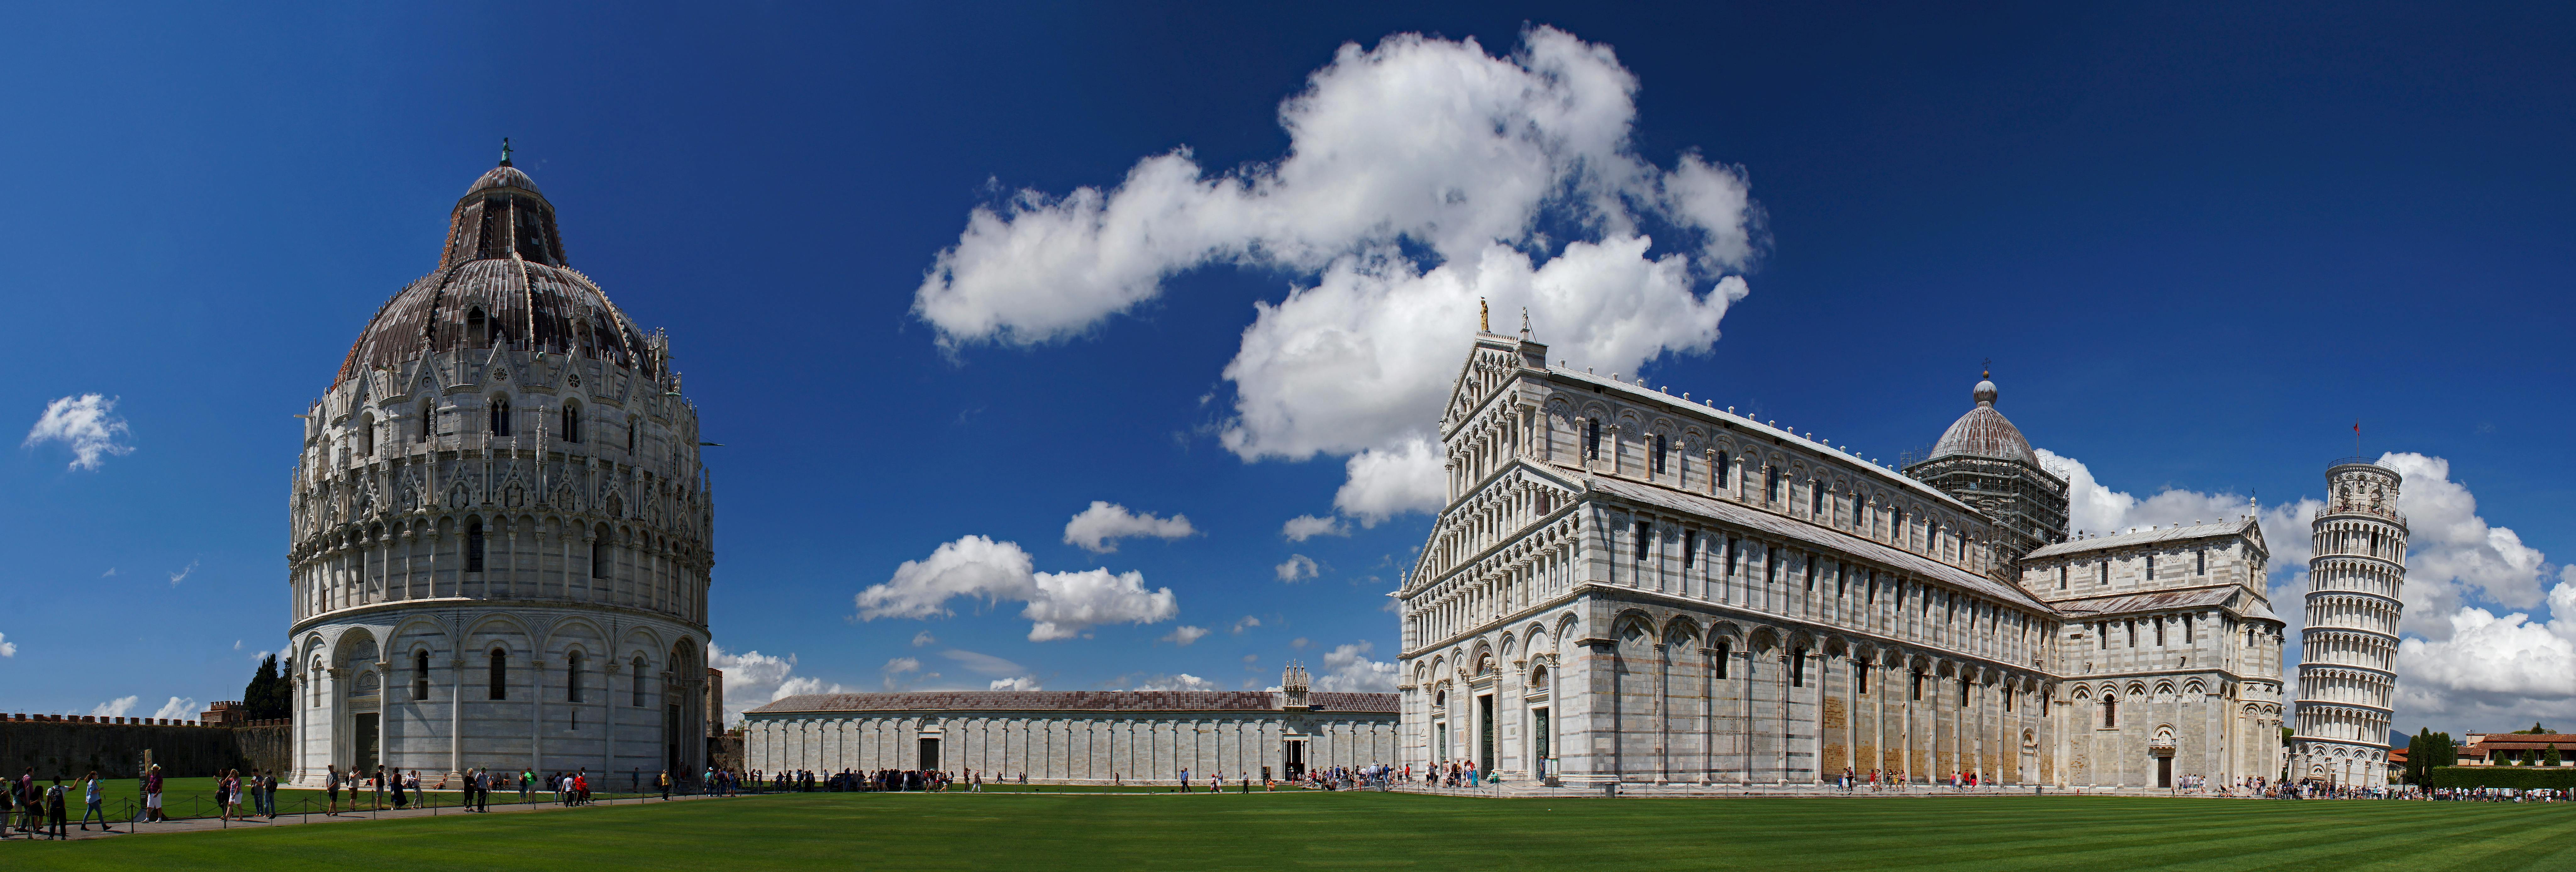 7 Wonders of Pisa Erkundungsspiel und Tour